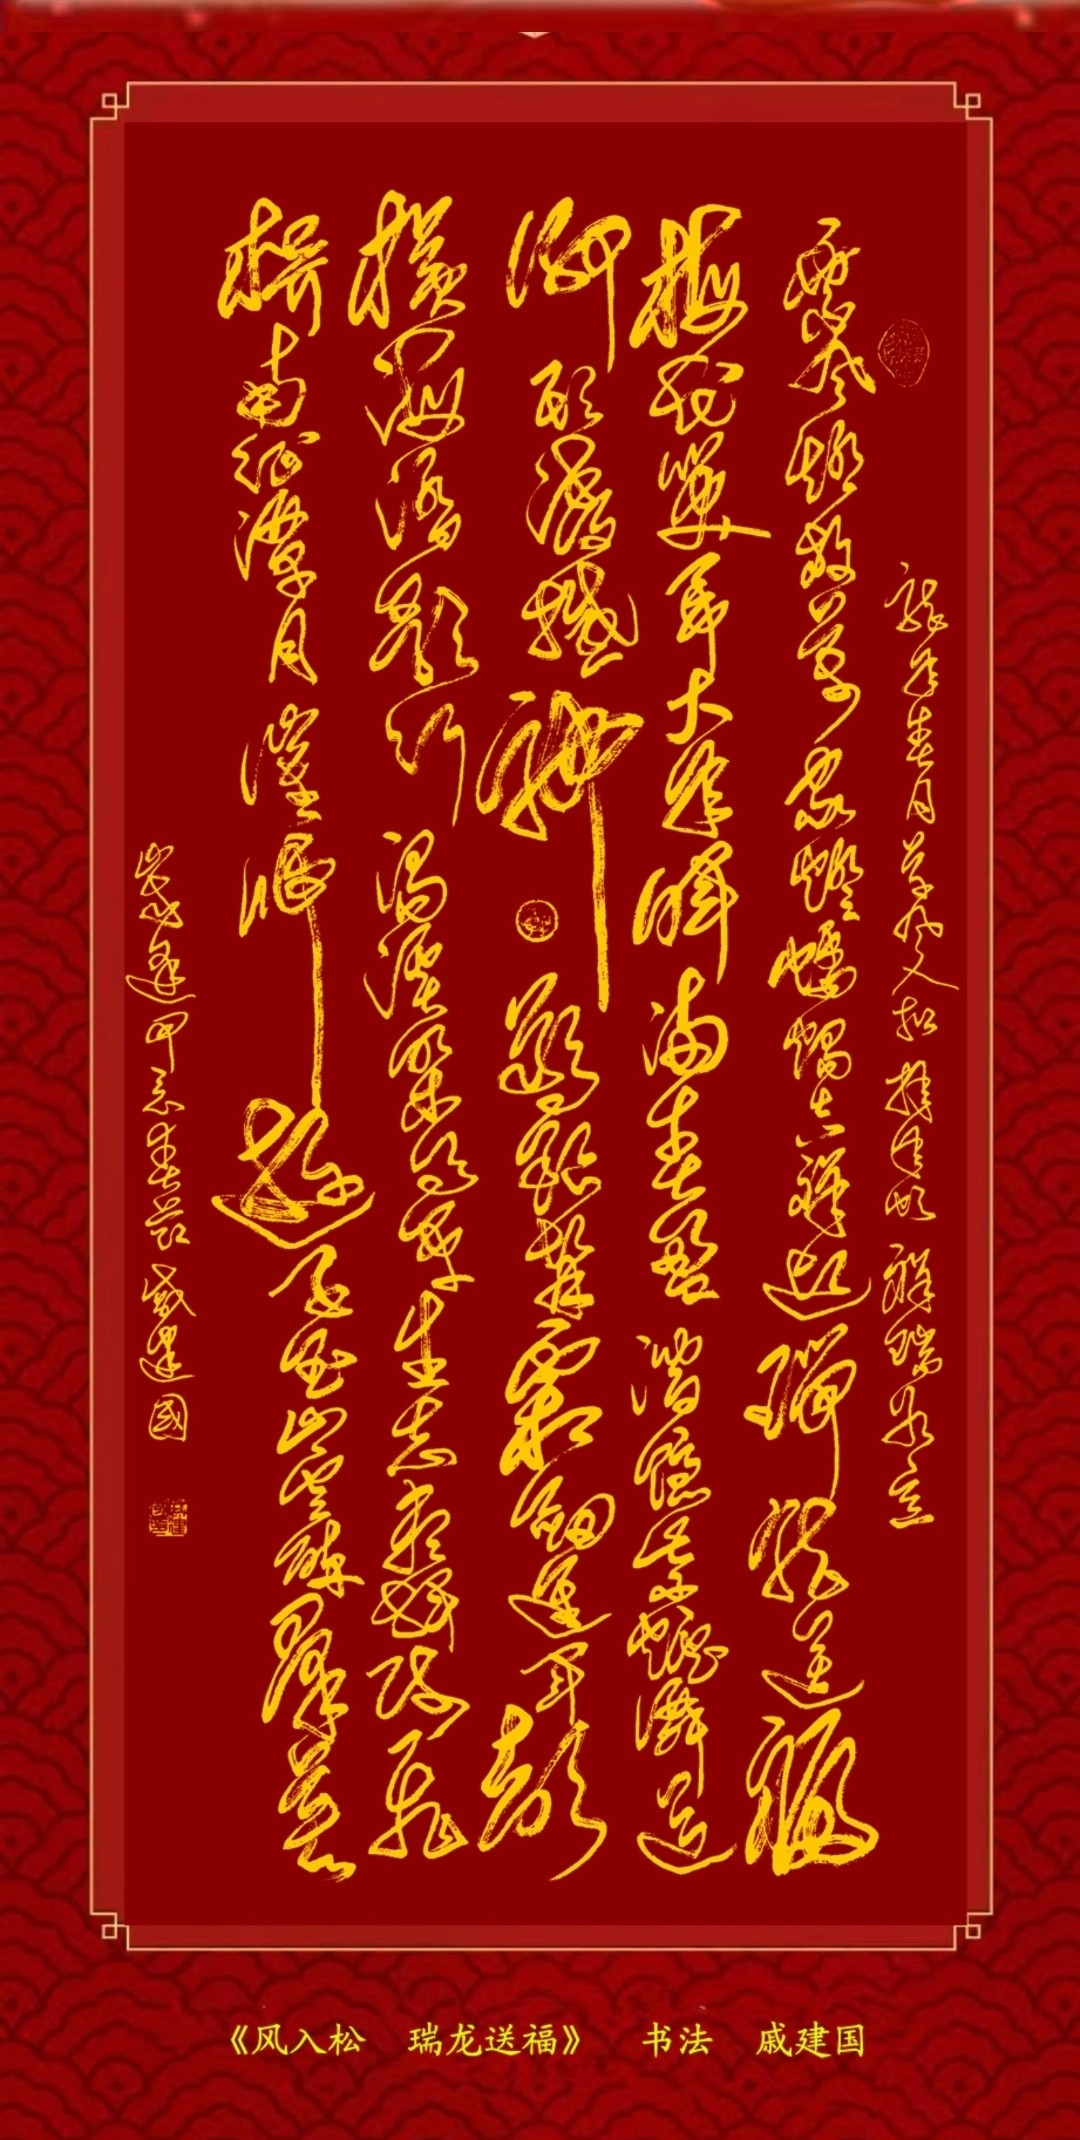 文化学者张子祥赏析戚建国首长新年贺词《风入松·瑞龙送福》